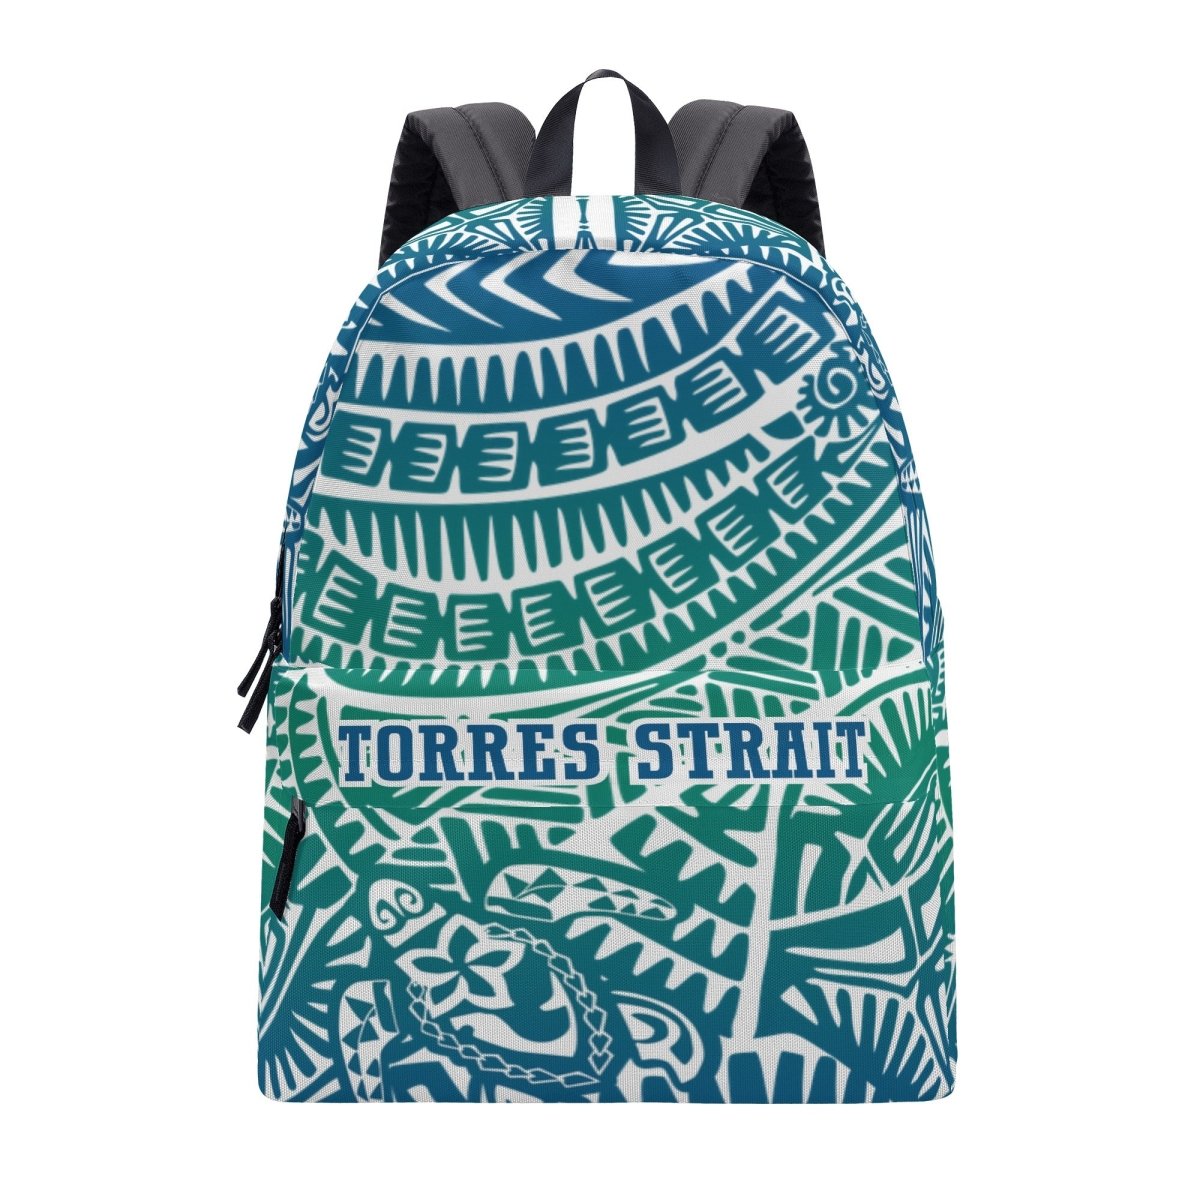 Torres Strait Backpack - White - Nesian Kulture